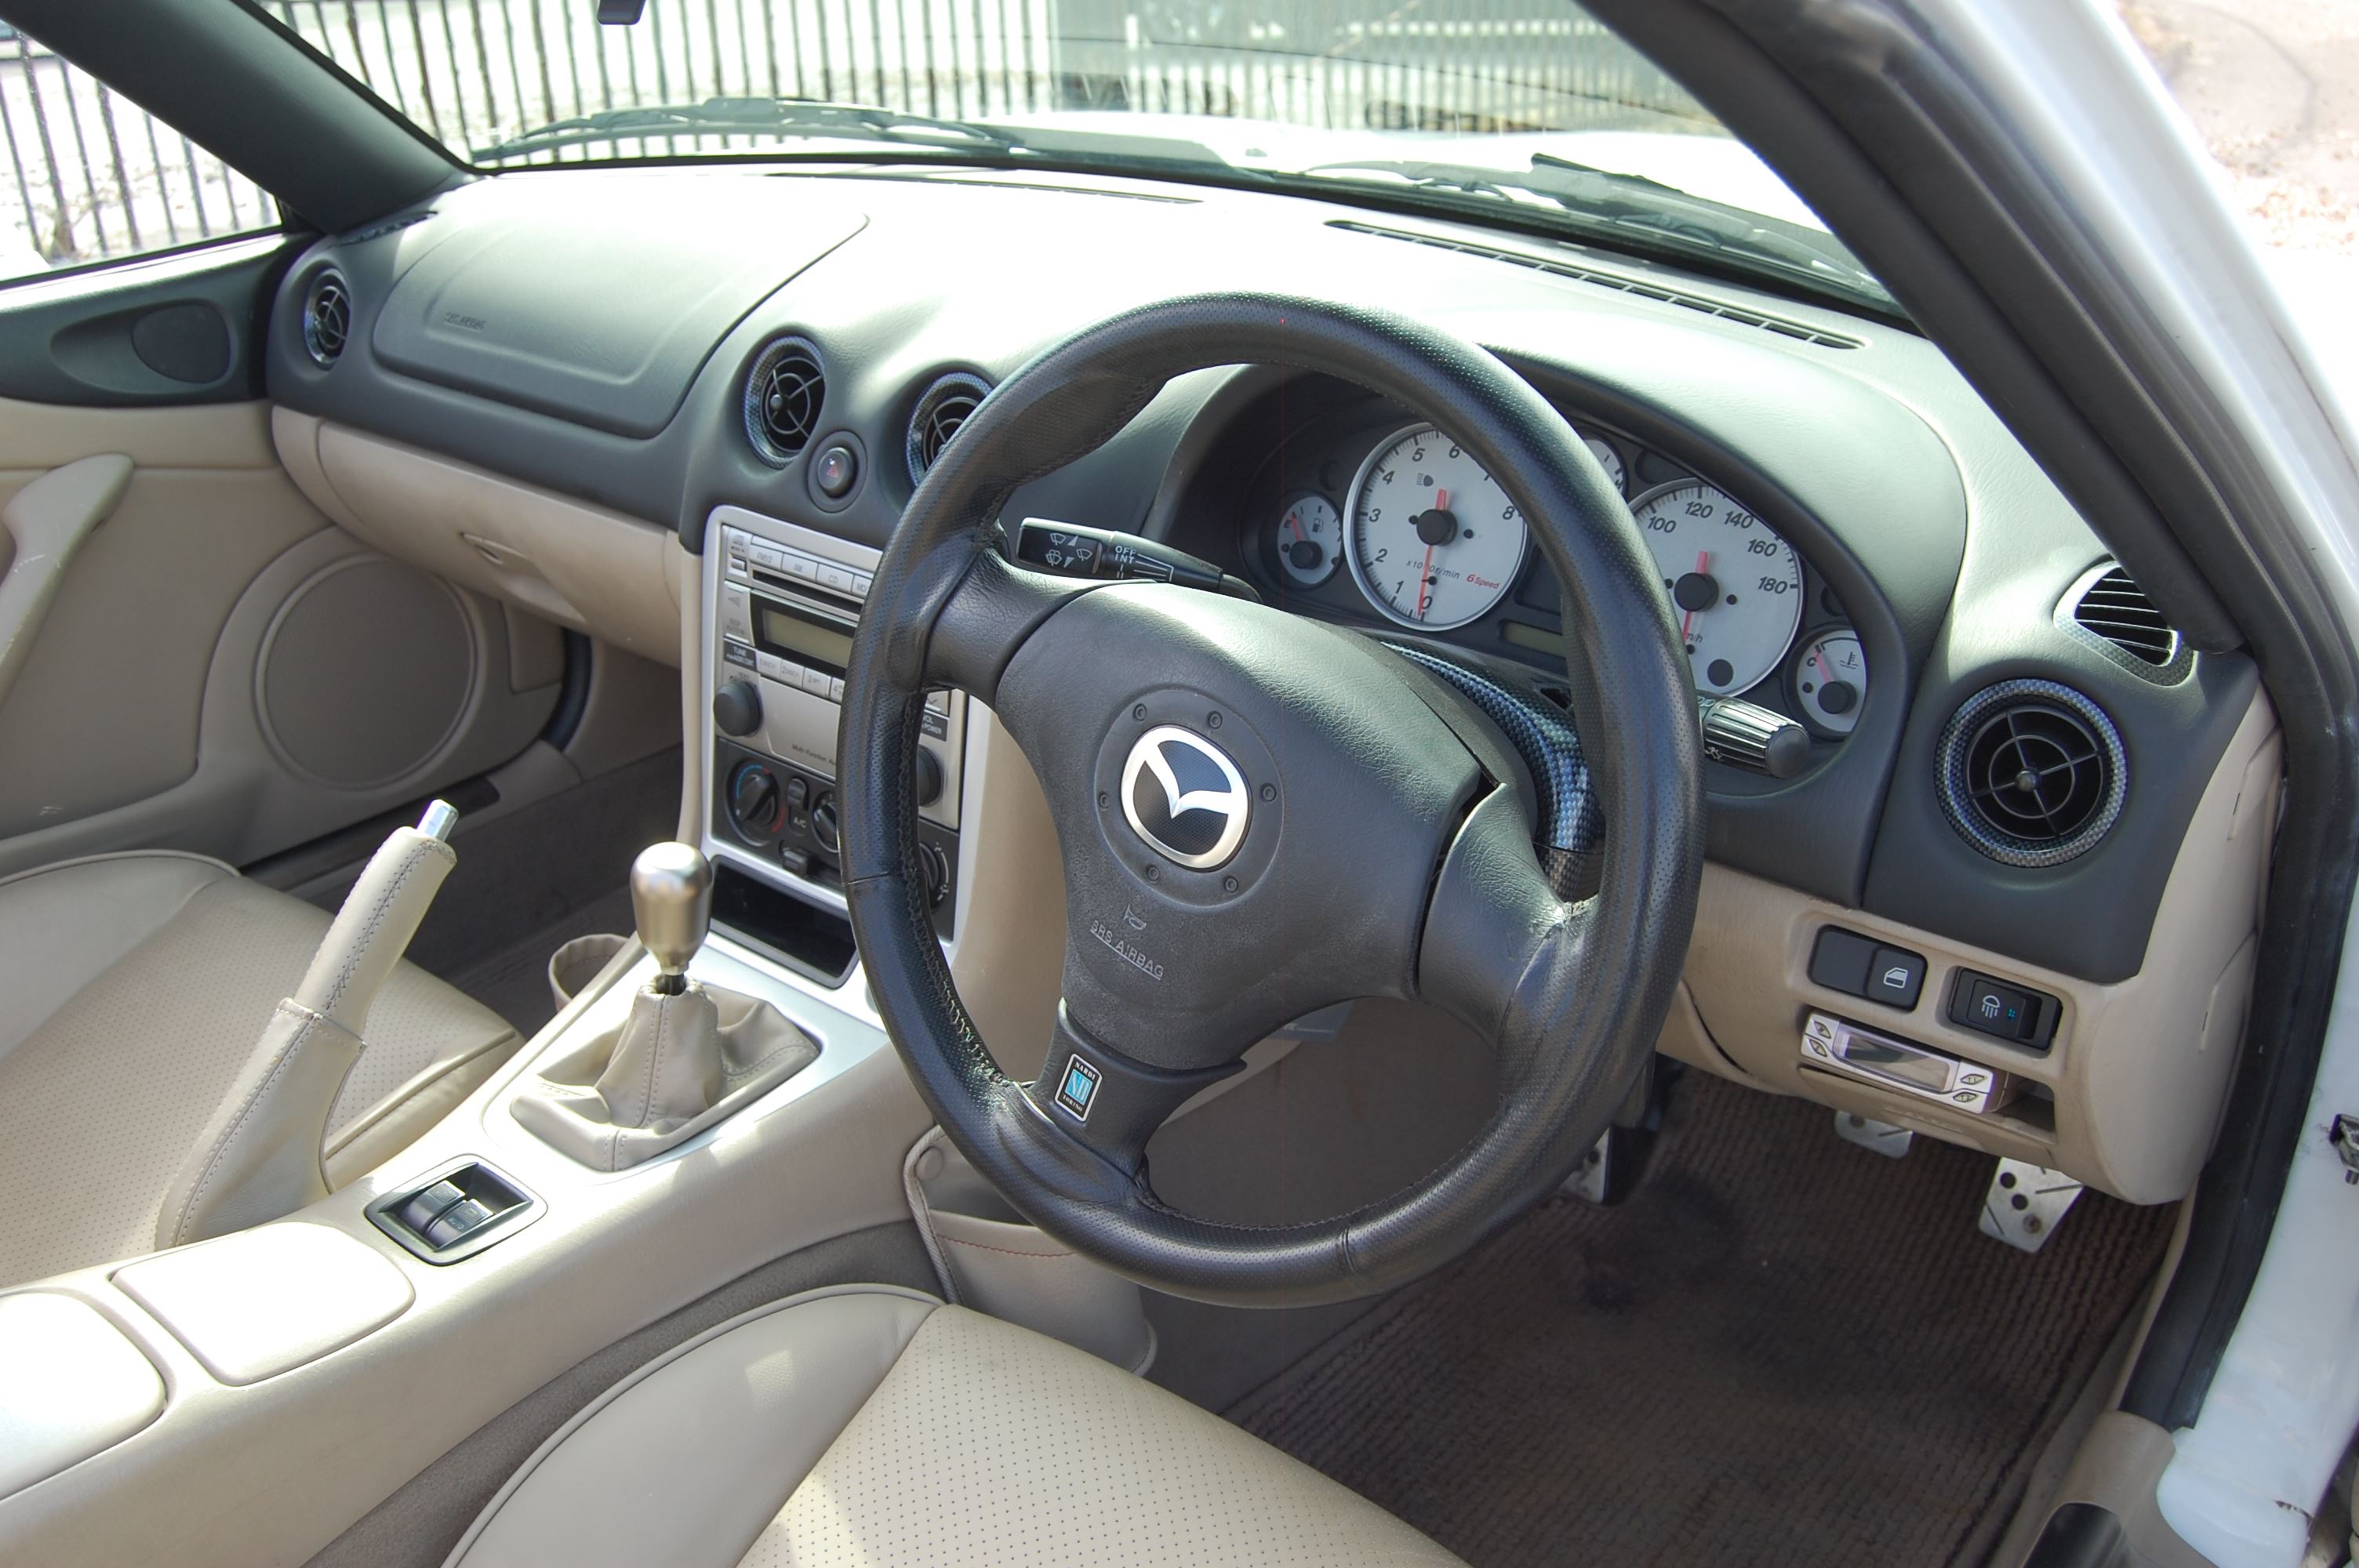 Mazdaspeed mazda mx5 turbo ejkb0yifforfmvgseuqii